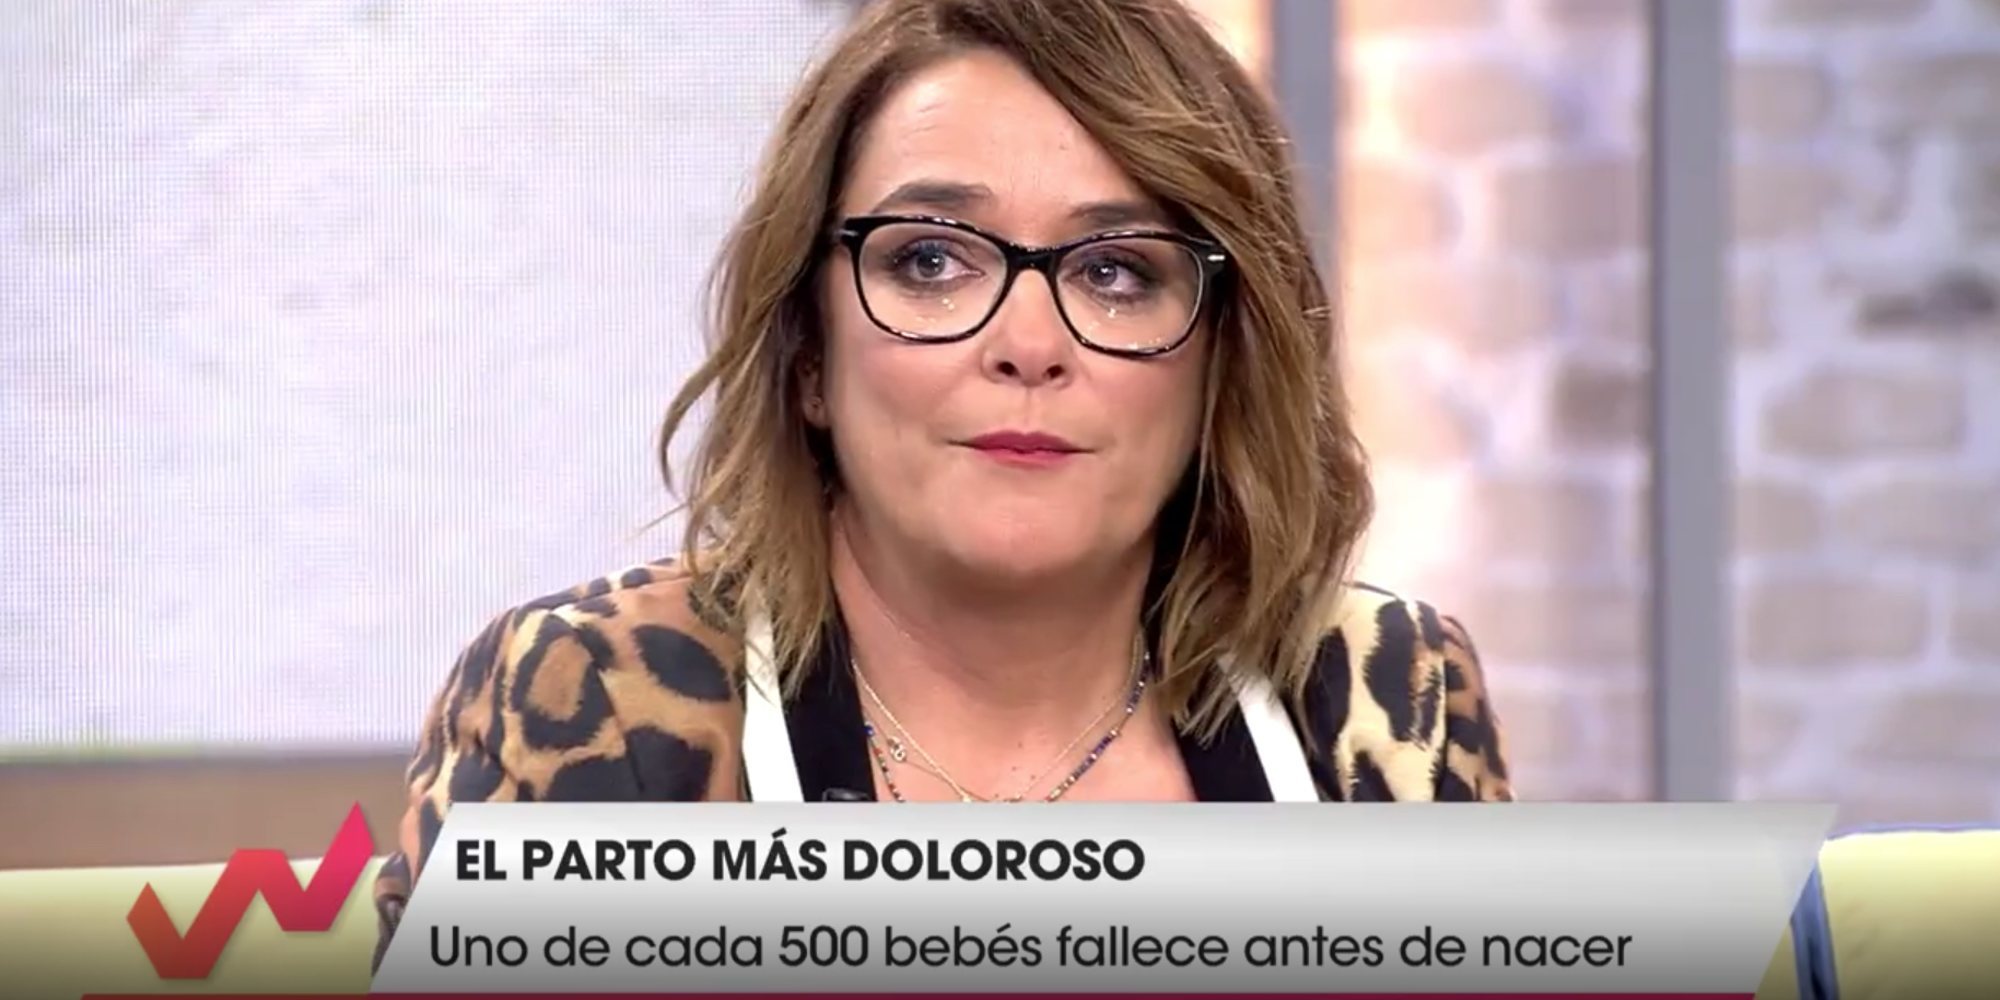 El motivo de las lágrimas de Toñi Moreno al hablar del aborto: "Mi madre tuvo uno y nunca se recuperó"